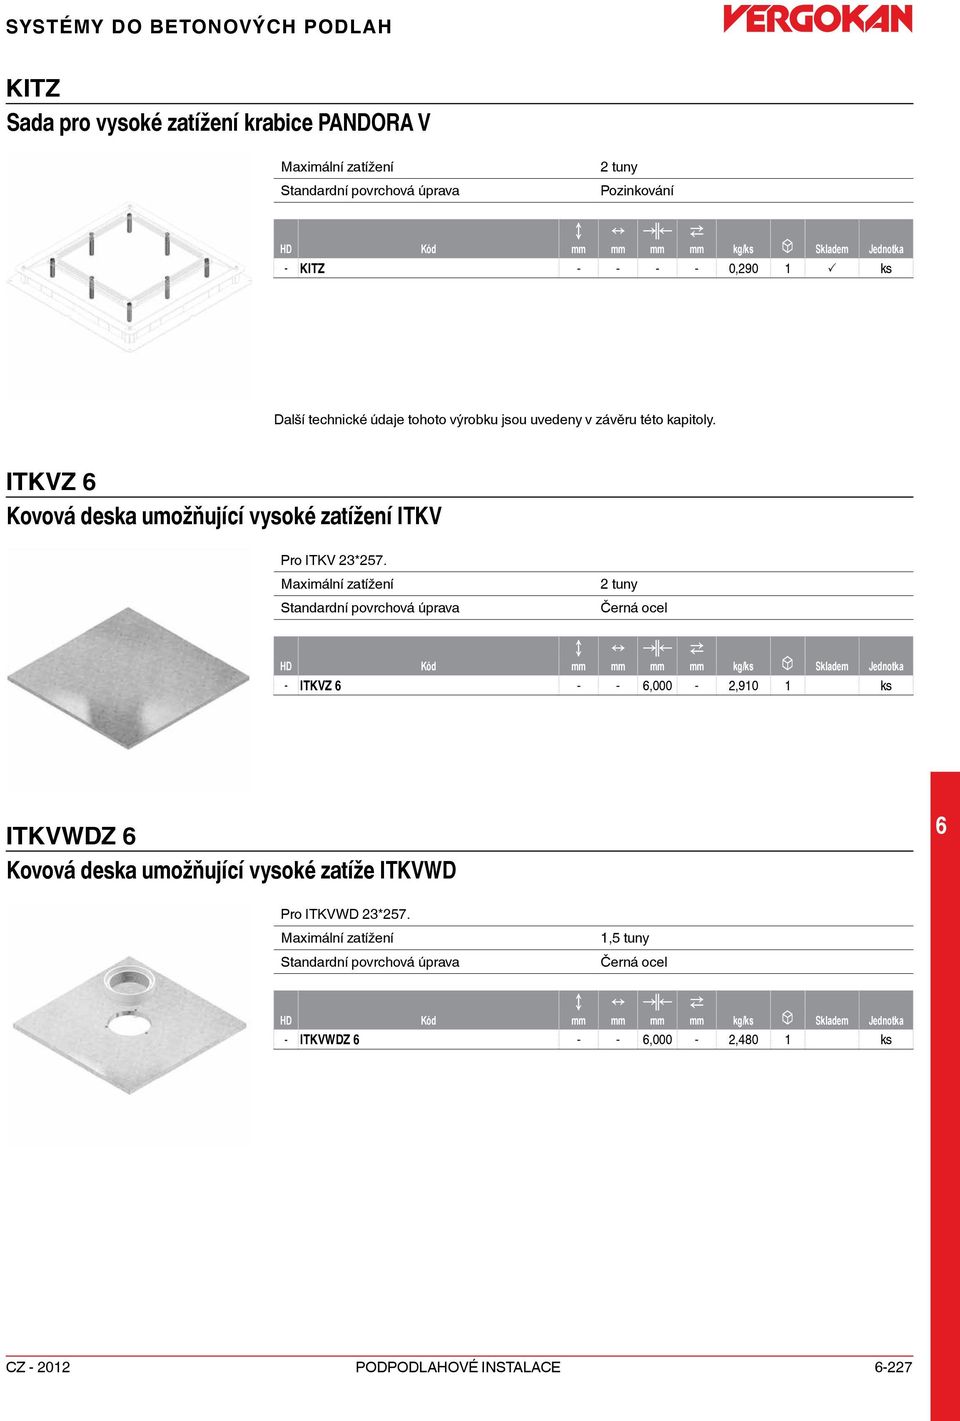 ITKVZ Kovová deska umožňující vysoké zatížení ITKV Pro ITKV 3*57.